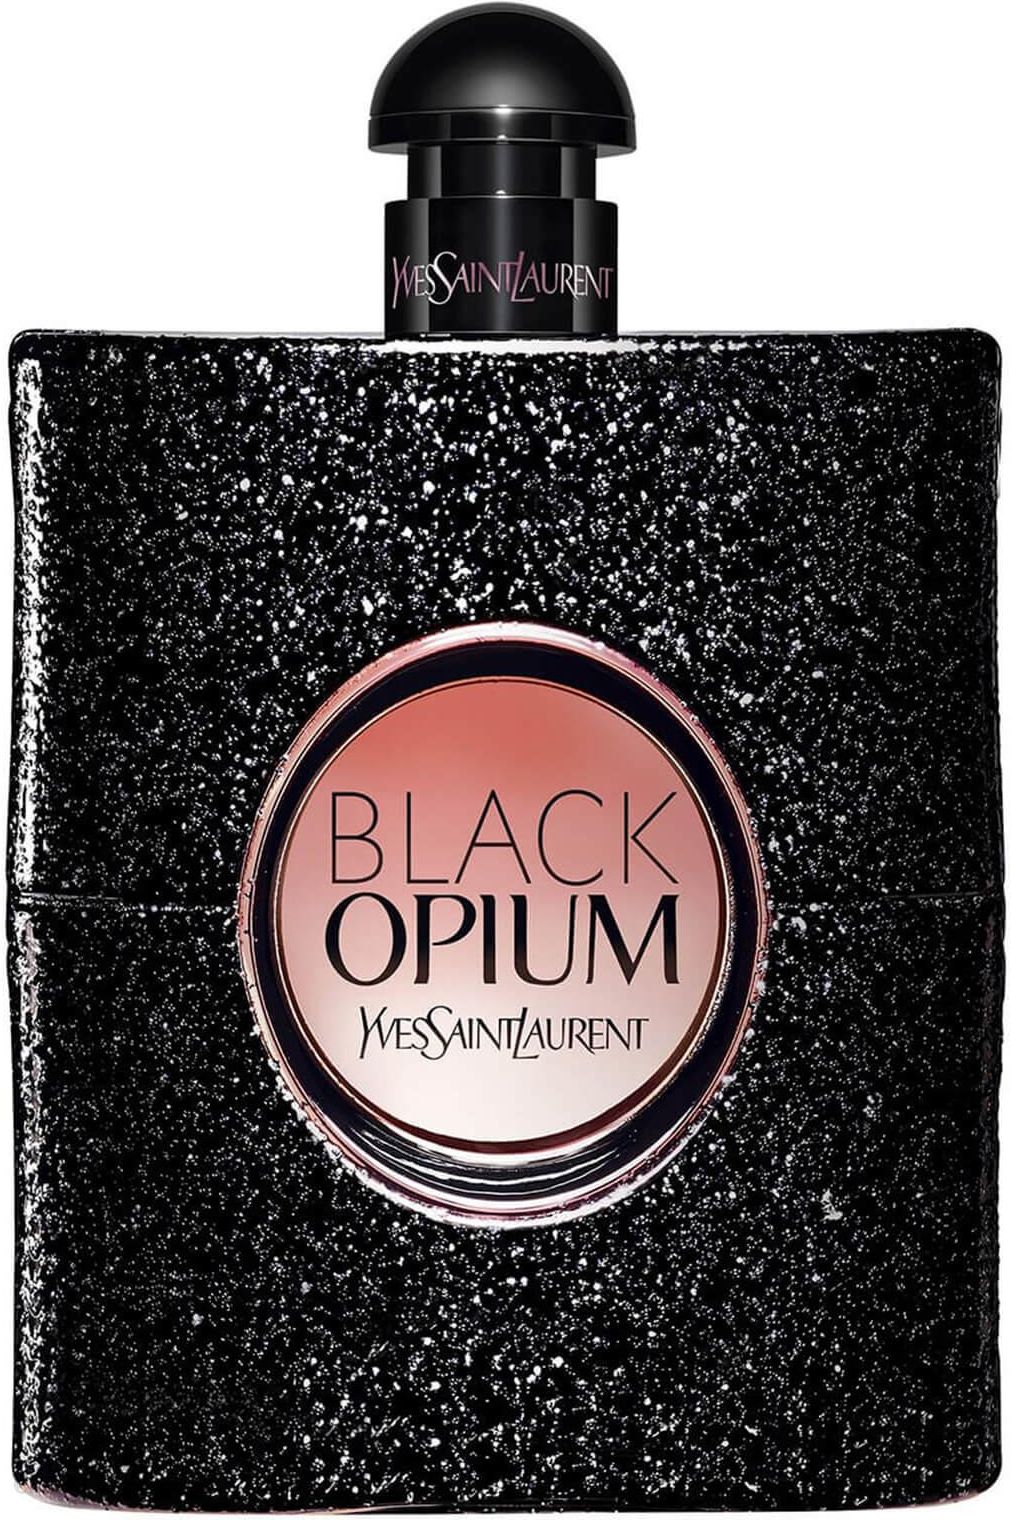 Yves Saint Laurent Black Opium woda perfumowana 150ml